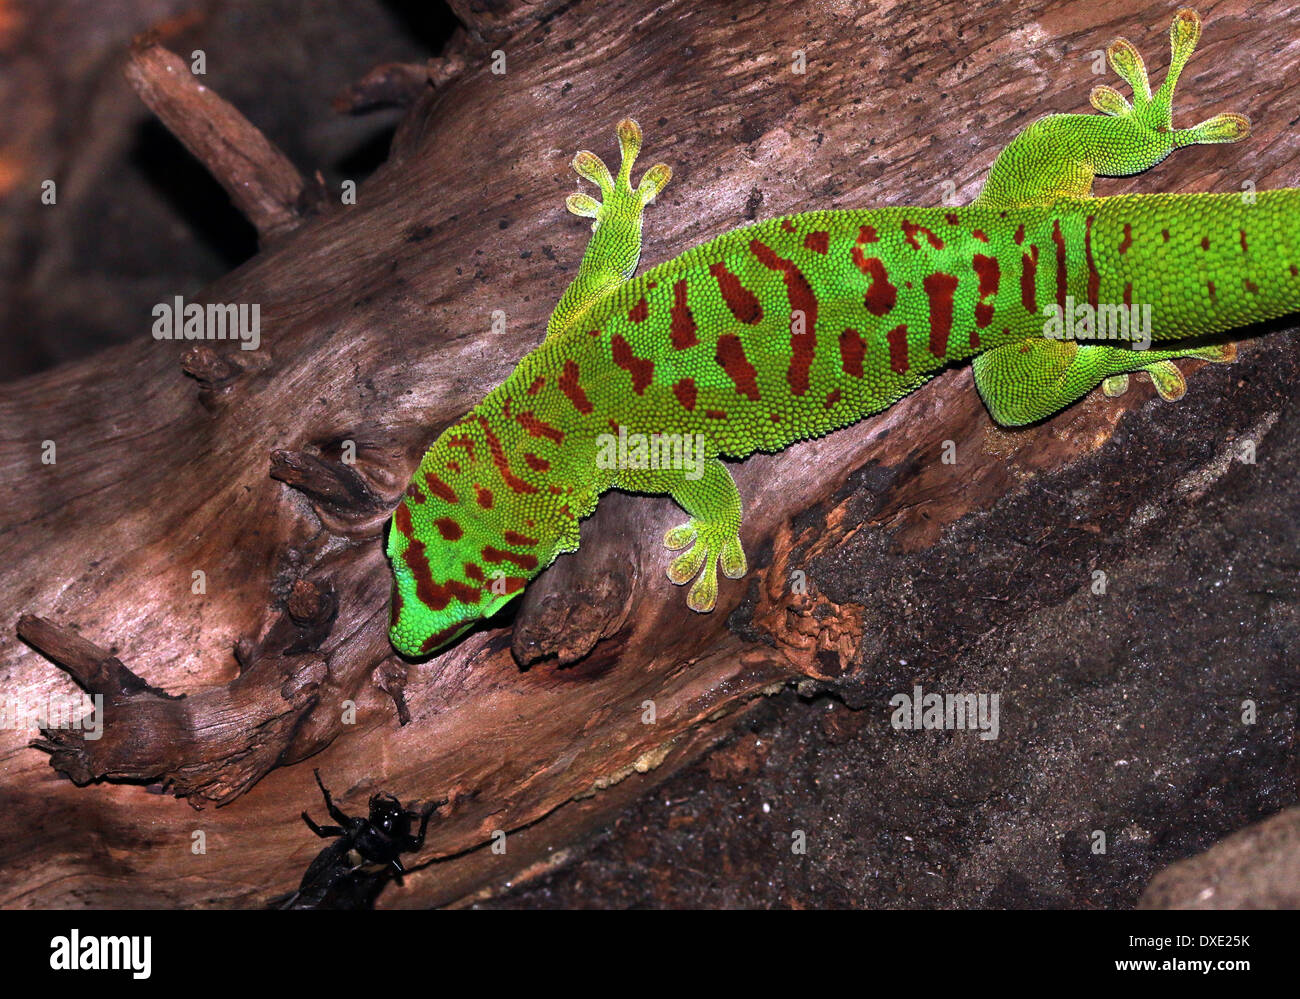 Green Day Gecko de Madagascar (Phelsuma madagascariensis) Foto de stock